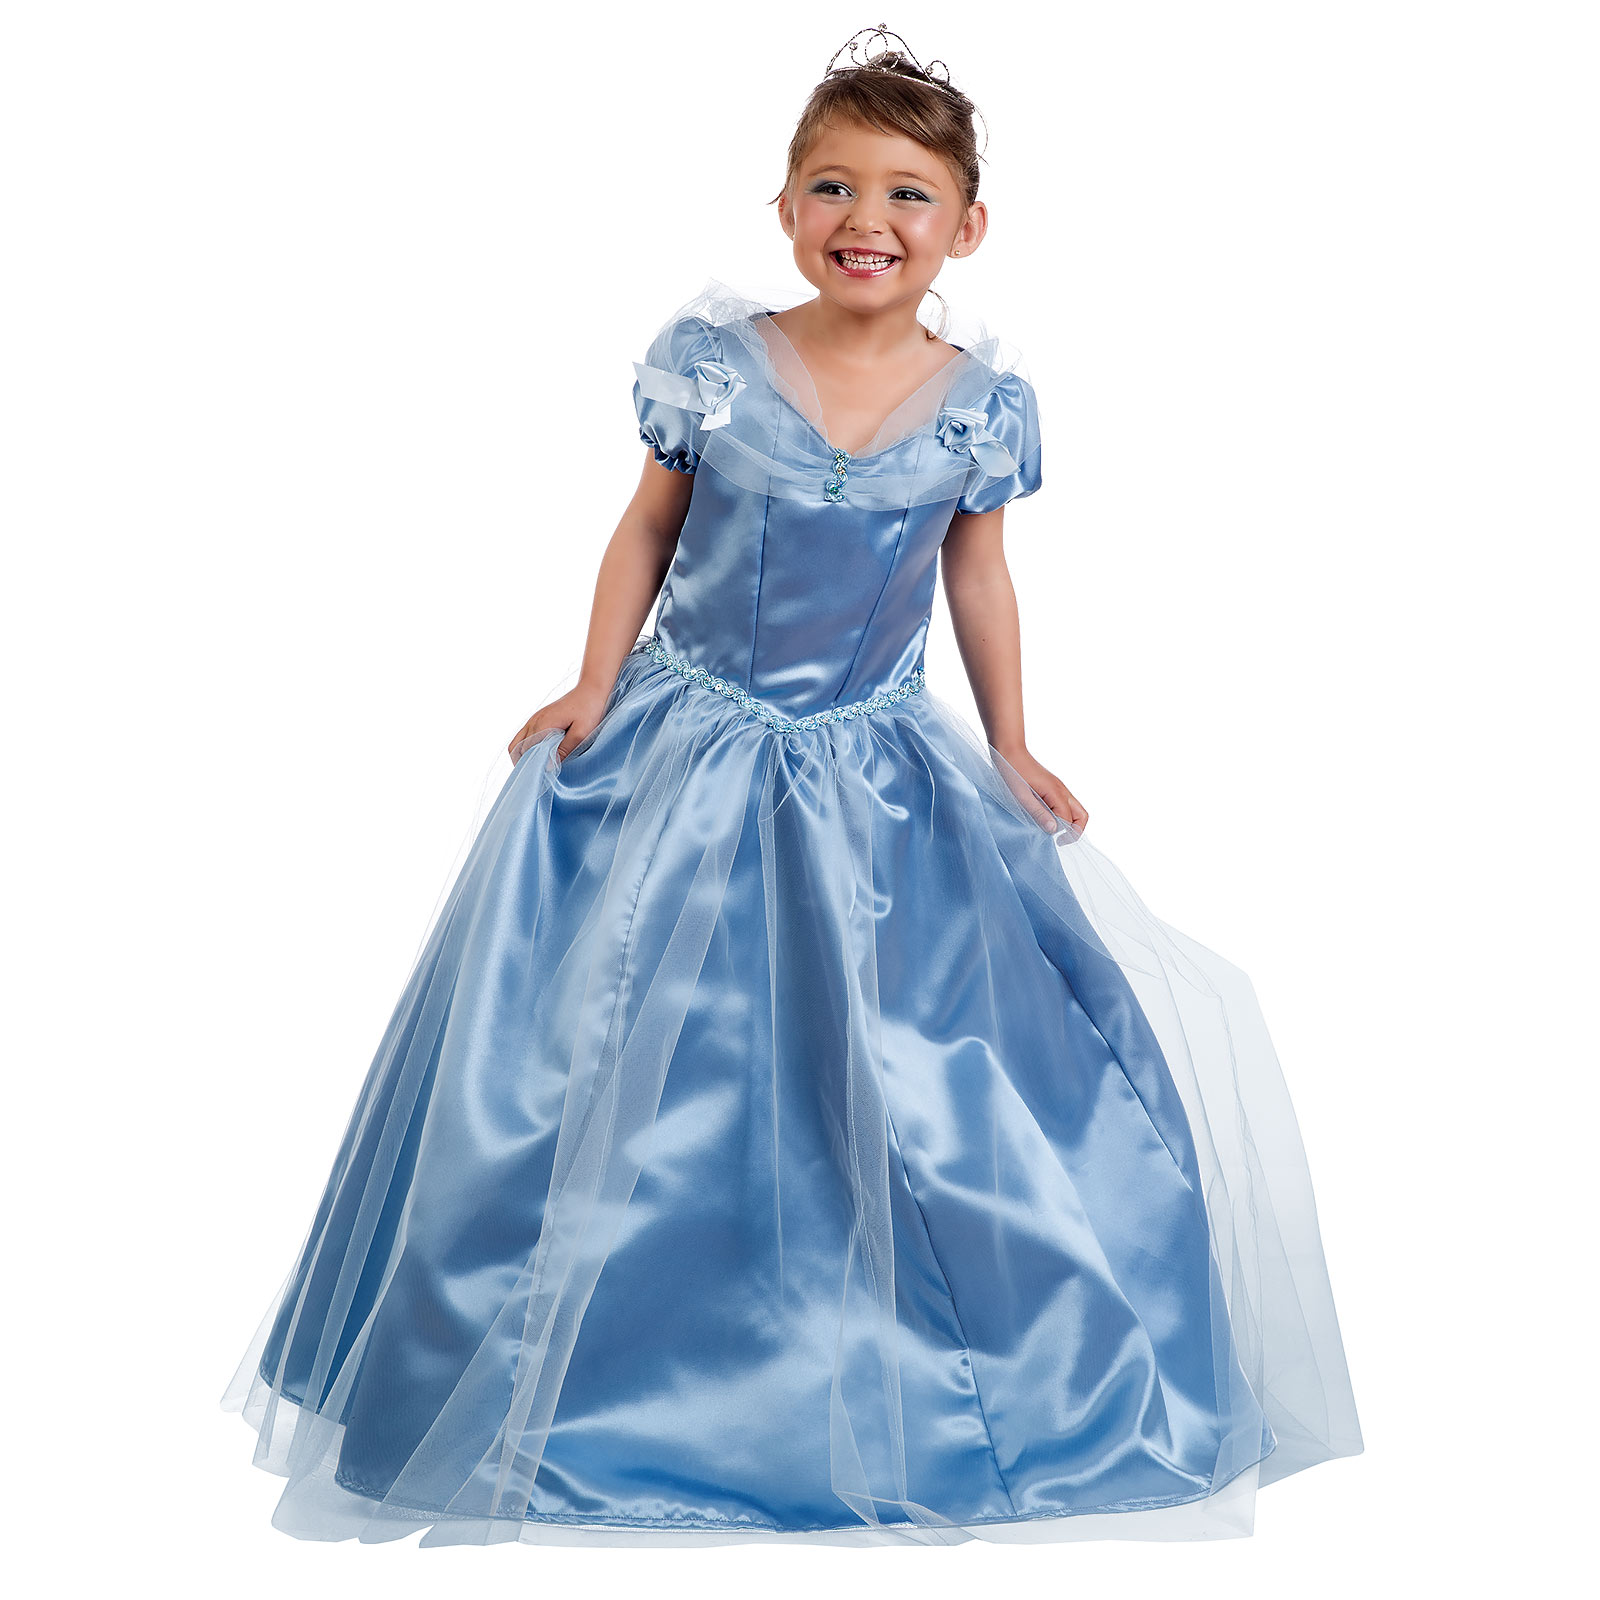 Cinderella Prinzessin Kleid blau - Kostüm Kinder